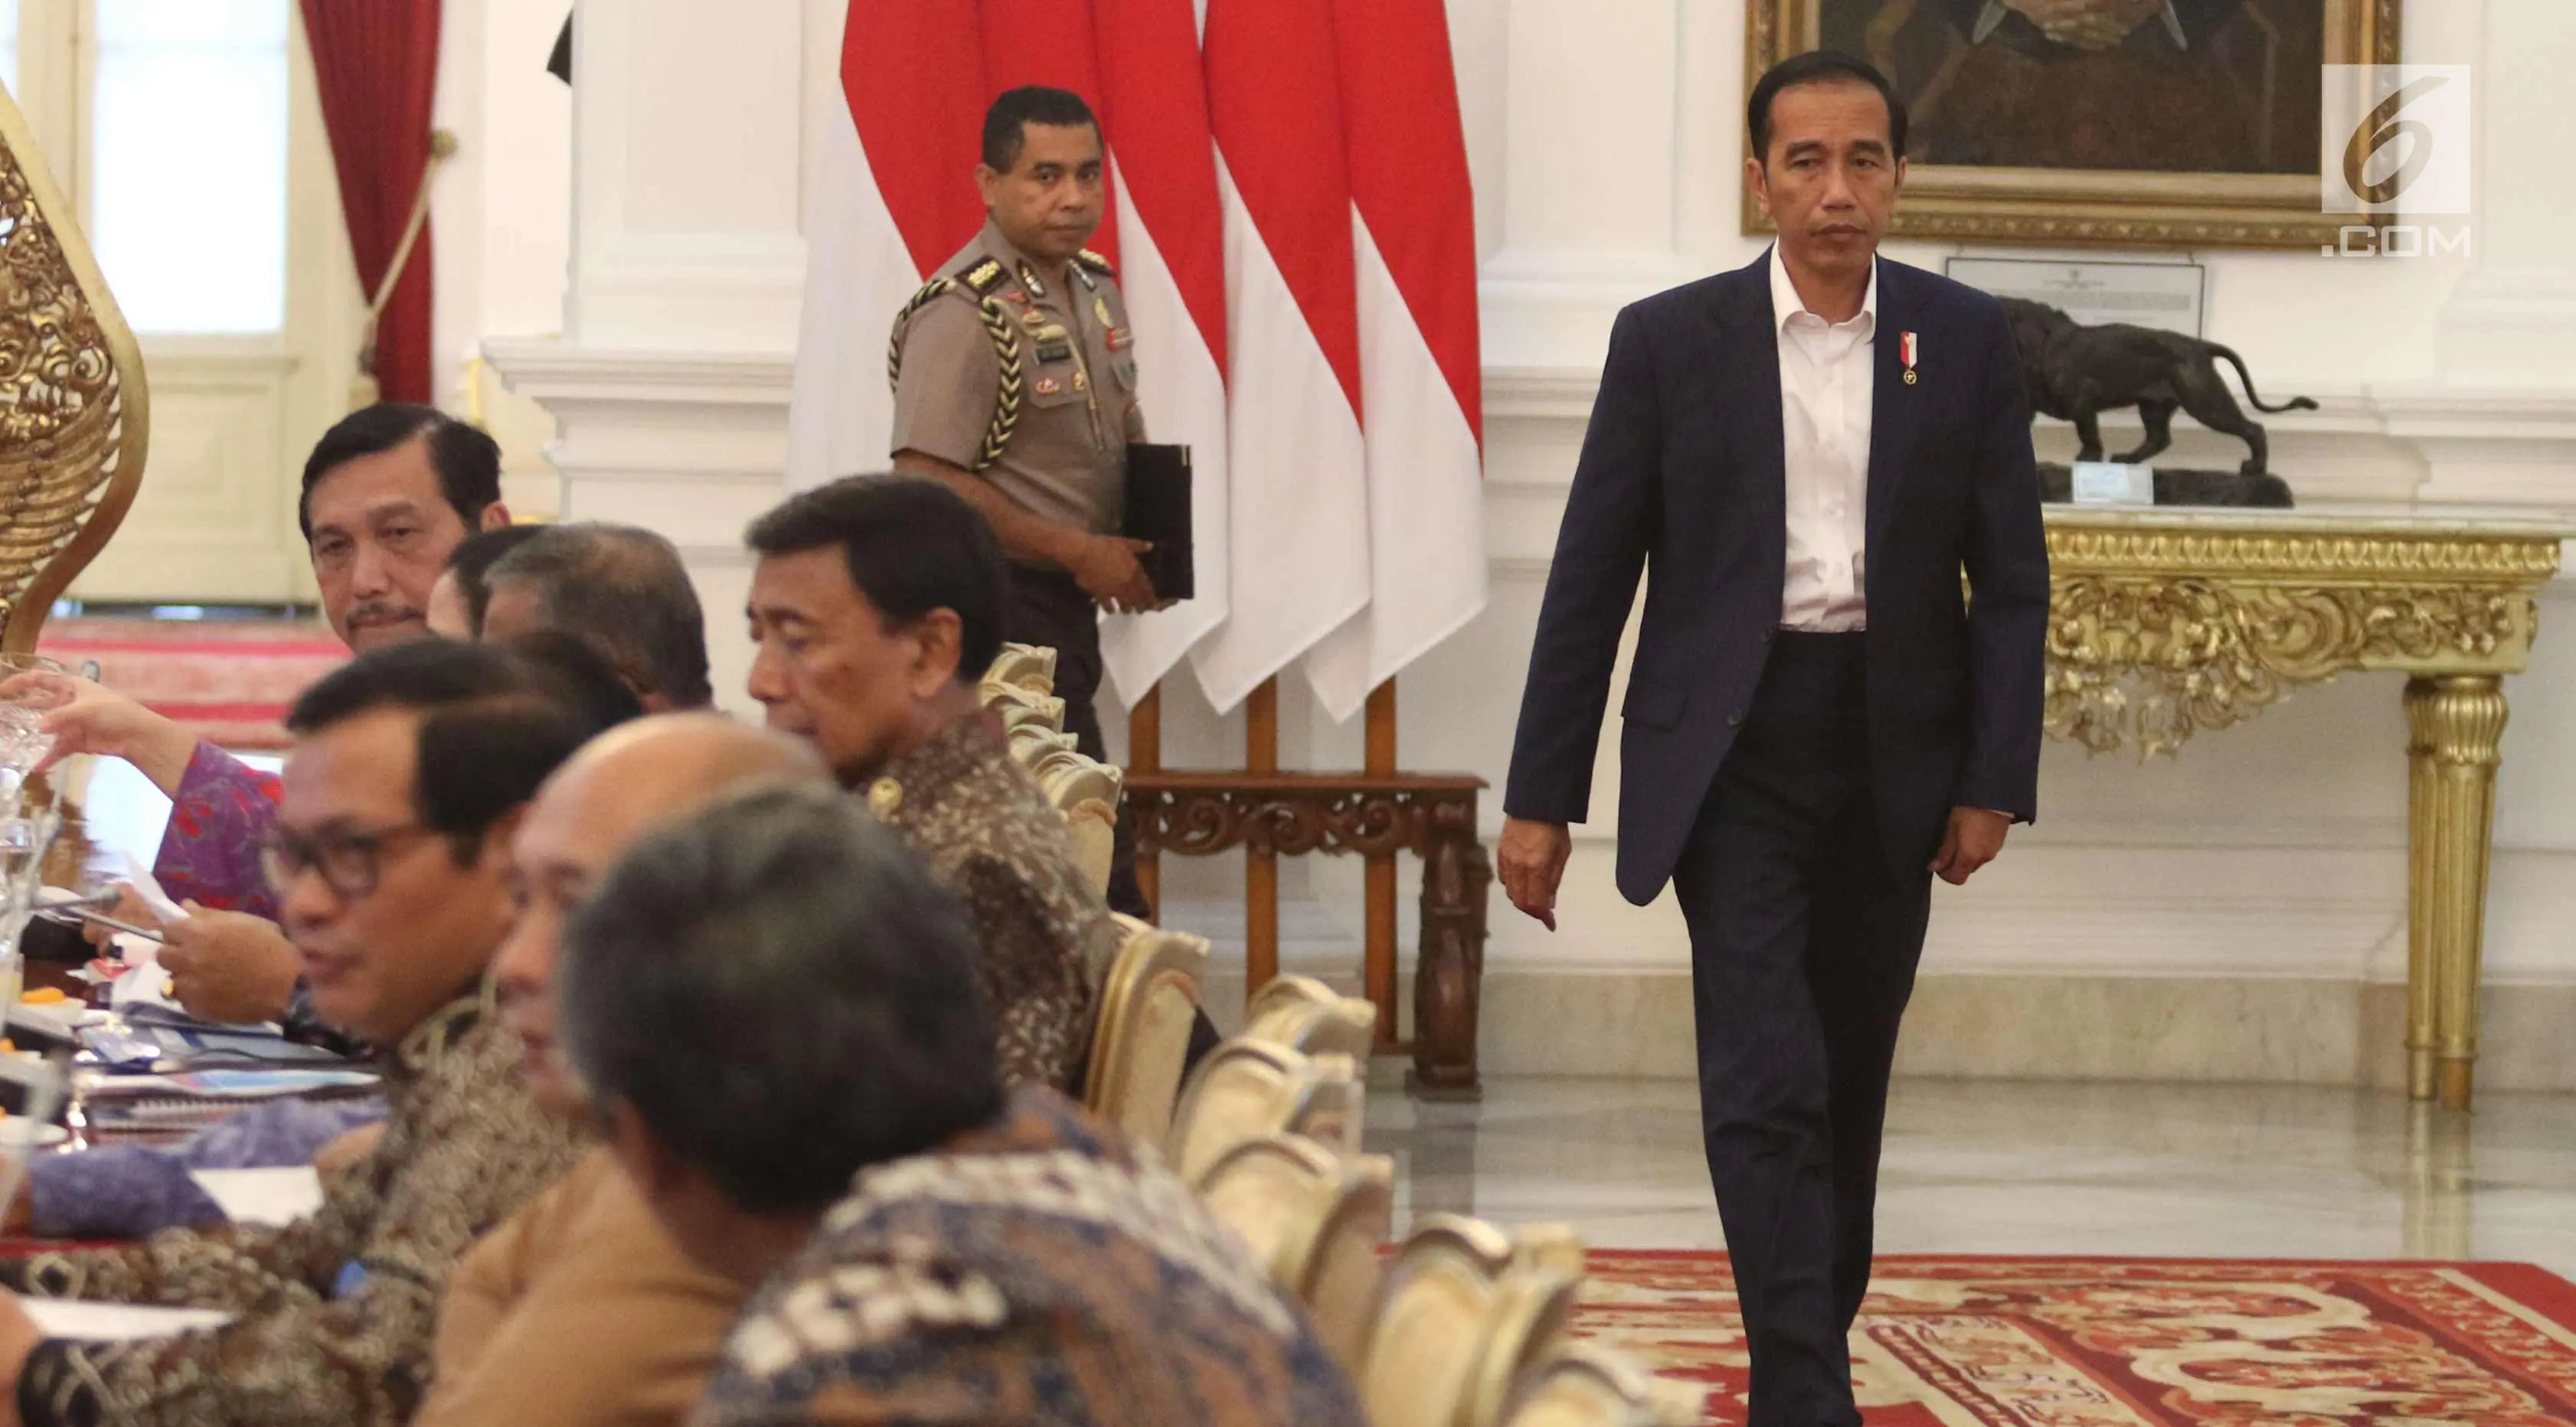 Presiden Joko Widodo berisap mengikuti rapat terbatas di Istana Merdeka, Jakarta, Senin (18/12). Dalam ratas tersebut Jokowi membahas persiapan Natal dan Tahun Baru. (Liputan6.com/Angga Yuniar)